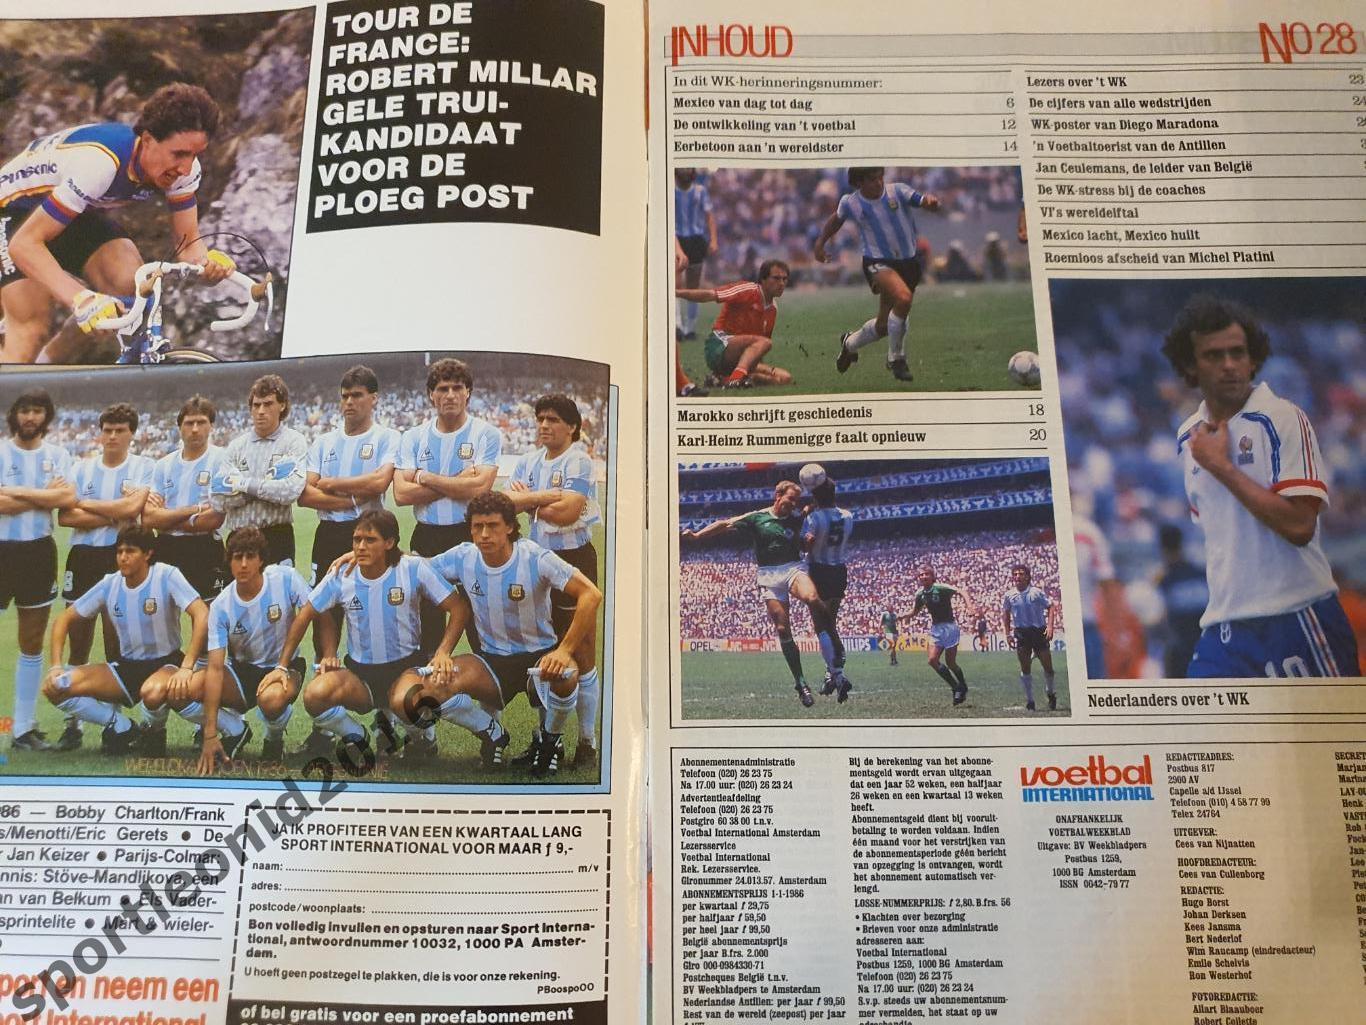 Voetbal International 1986.14 топ выпусков.В том числе итоговые к ЧМ-86.4 1